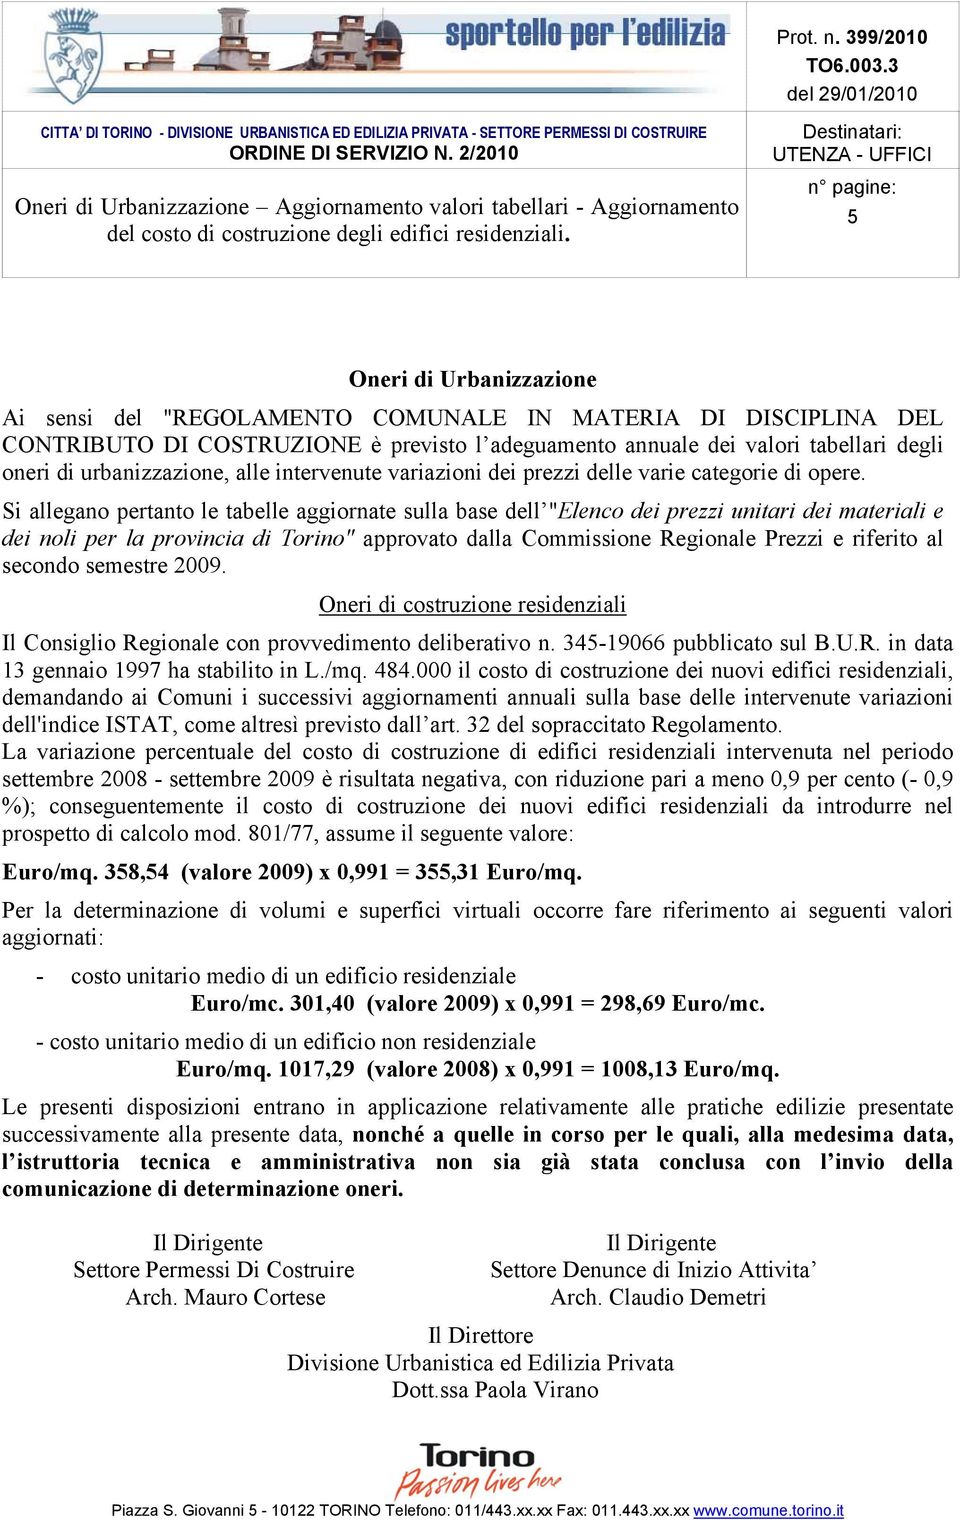 Si allegano pertanto le tabelle aggiornate sulla base dell "Elenco dei prezzi unitari dei materiali e dei noli per la provincia di Torino" approvato dalla Commissione Regionale Prezzi e riferito al